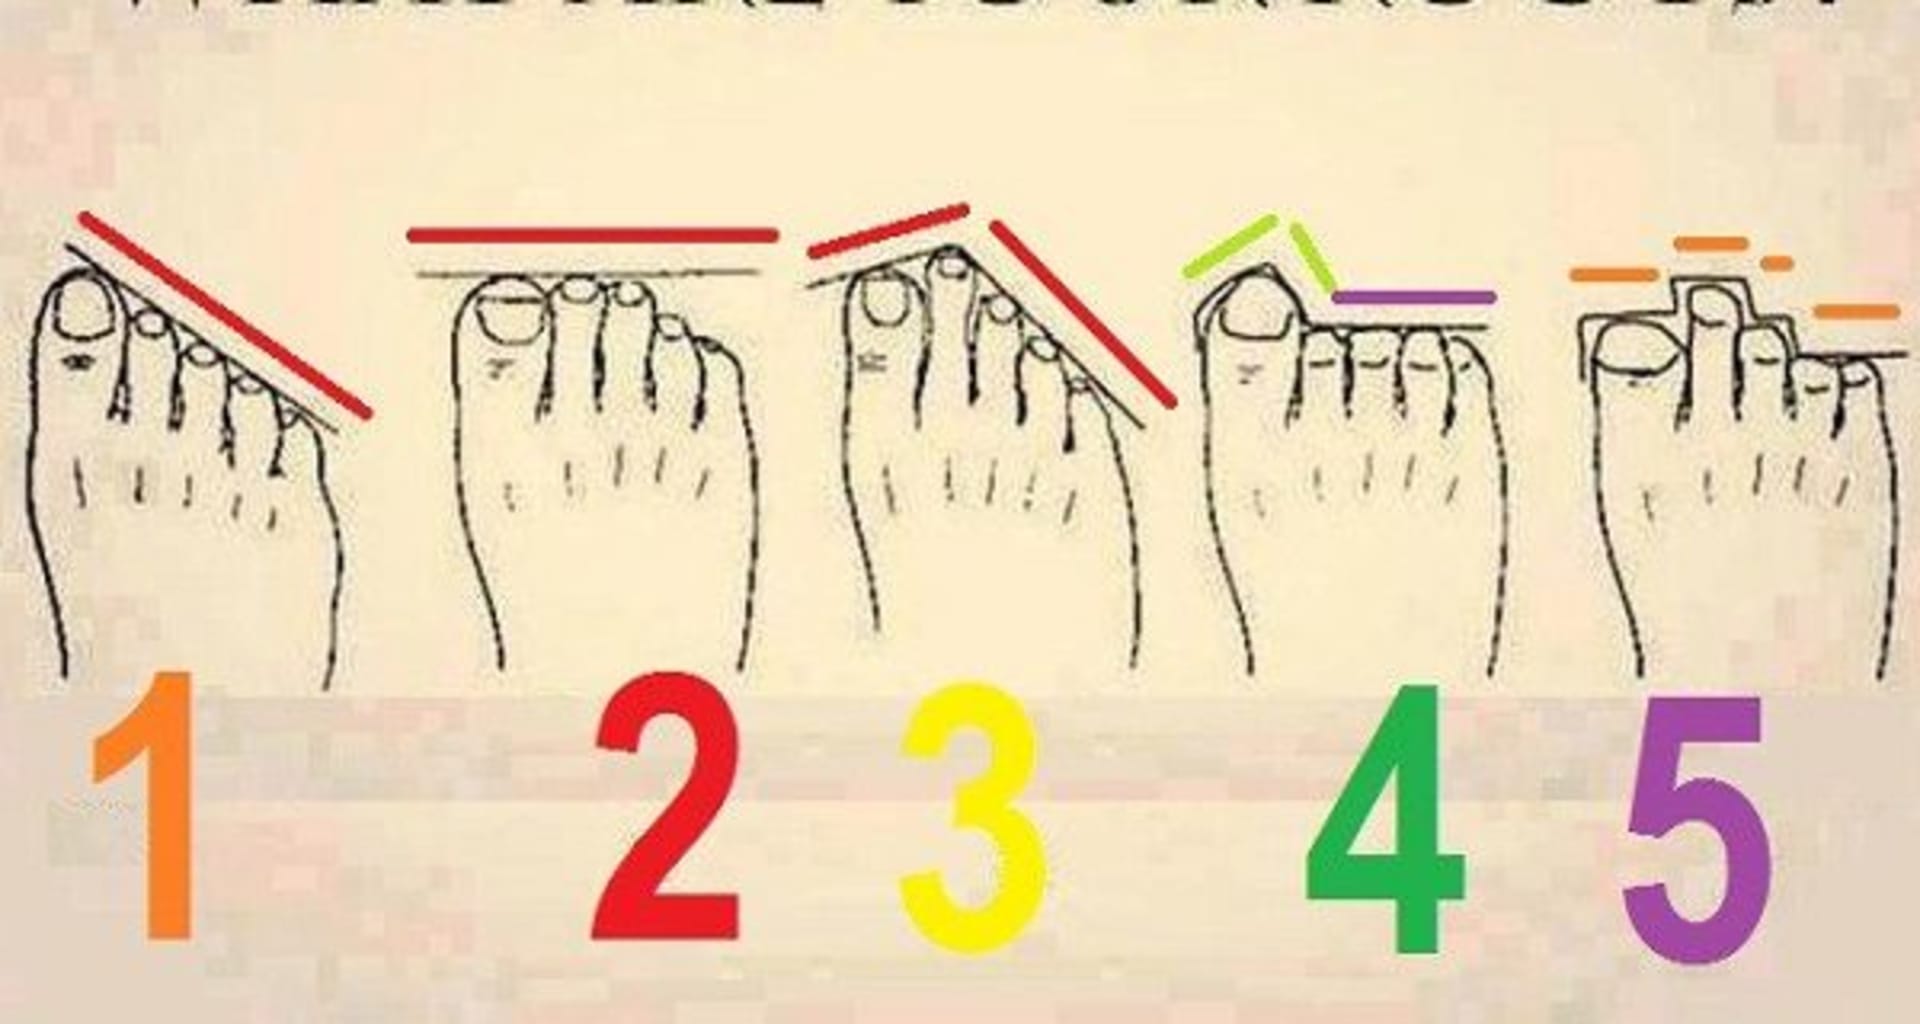 Jak vypadají vaše prsty na nohou?